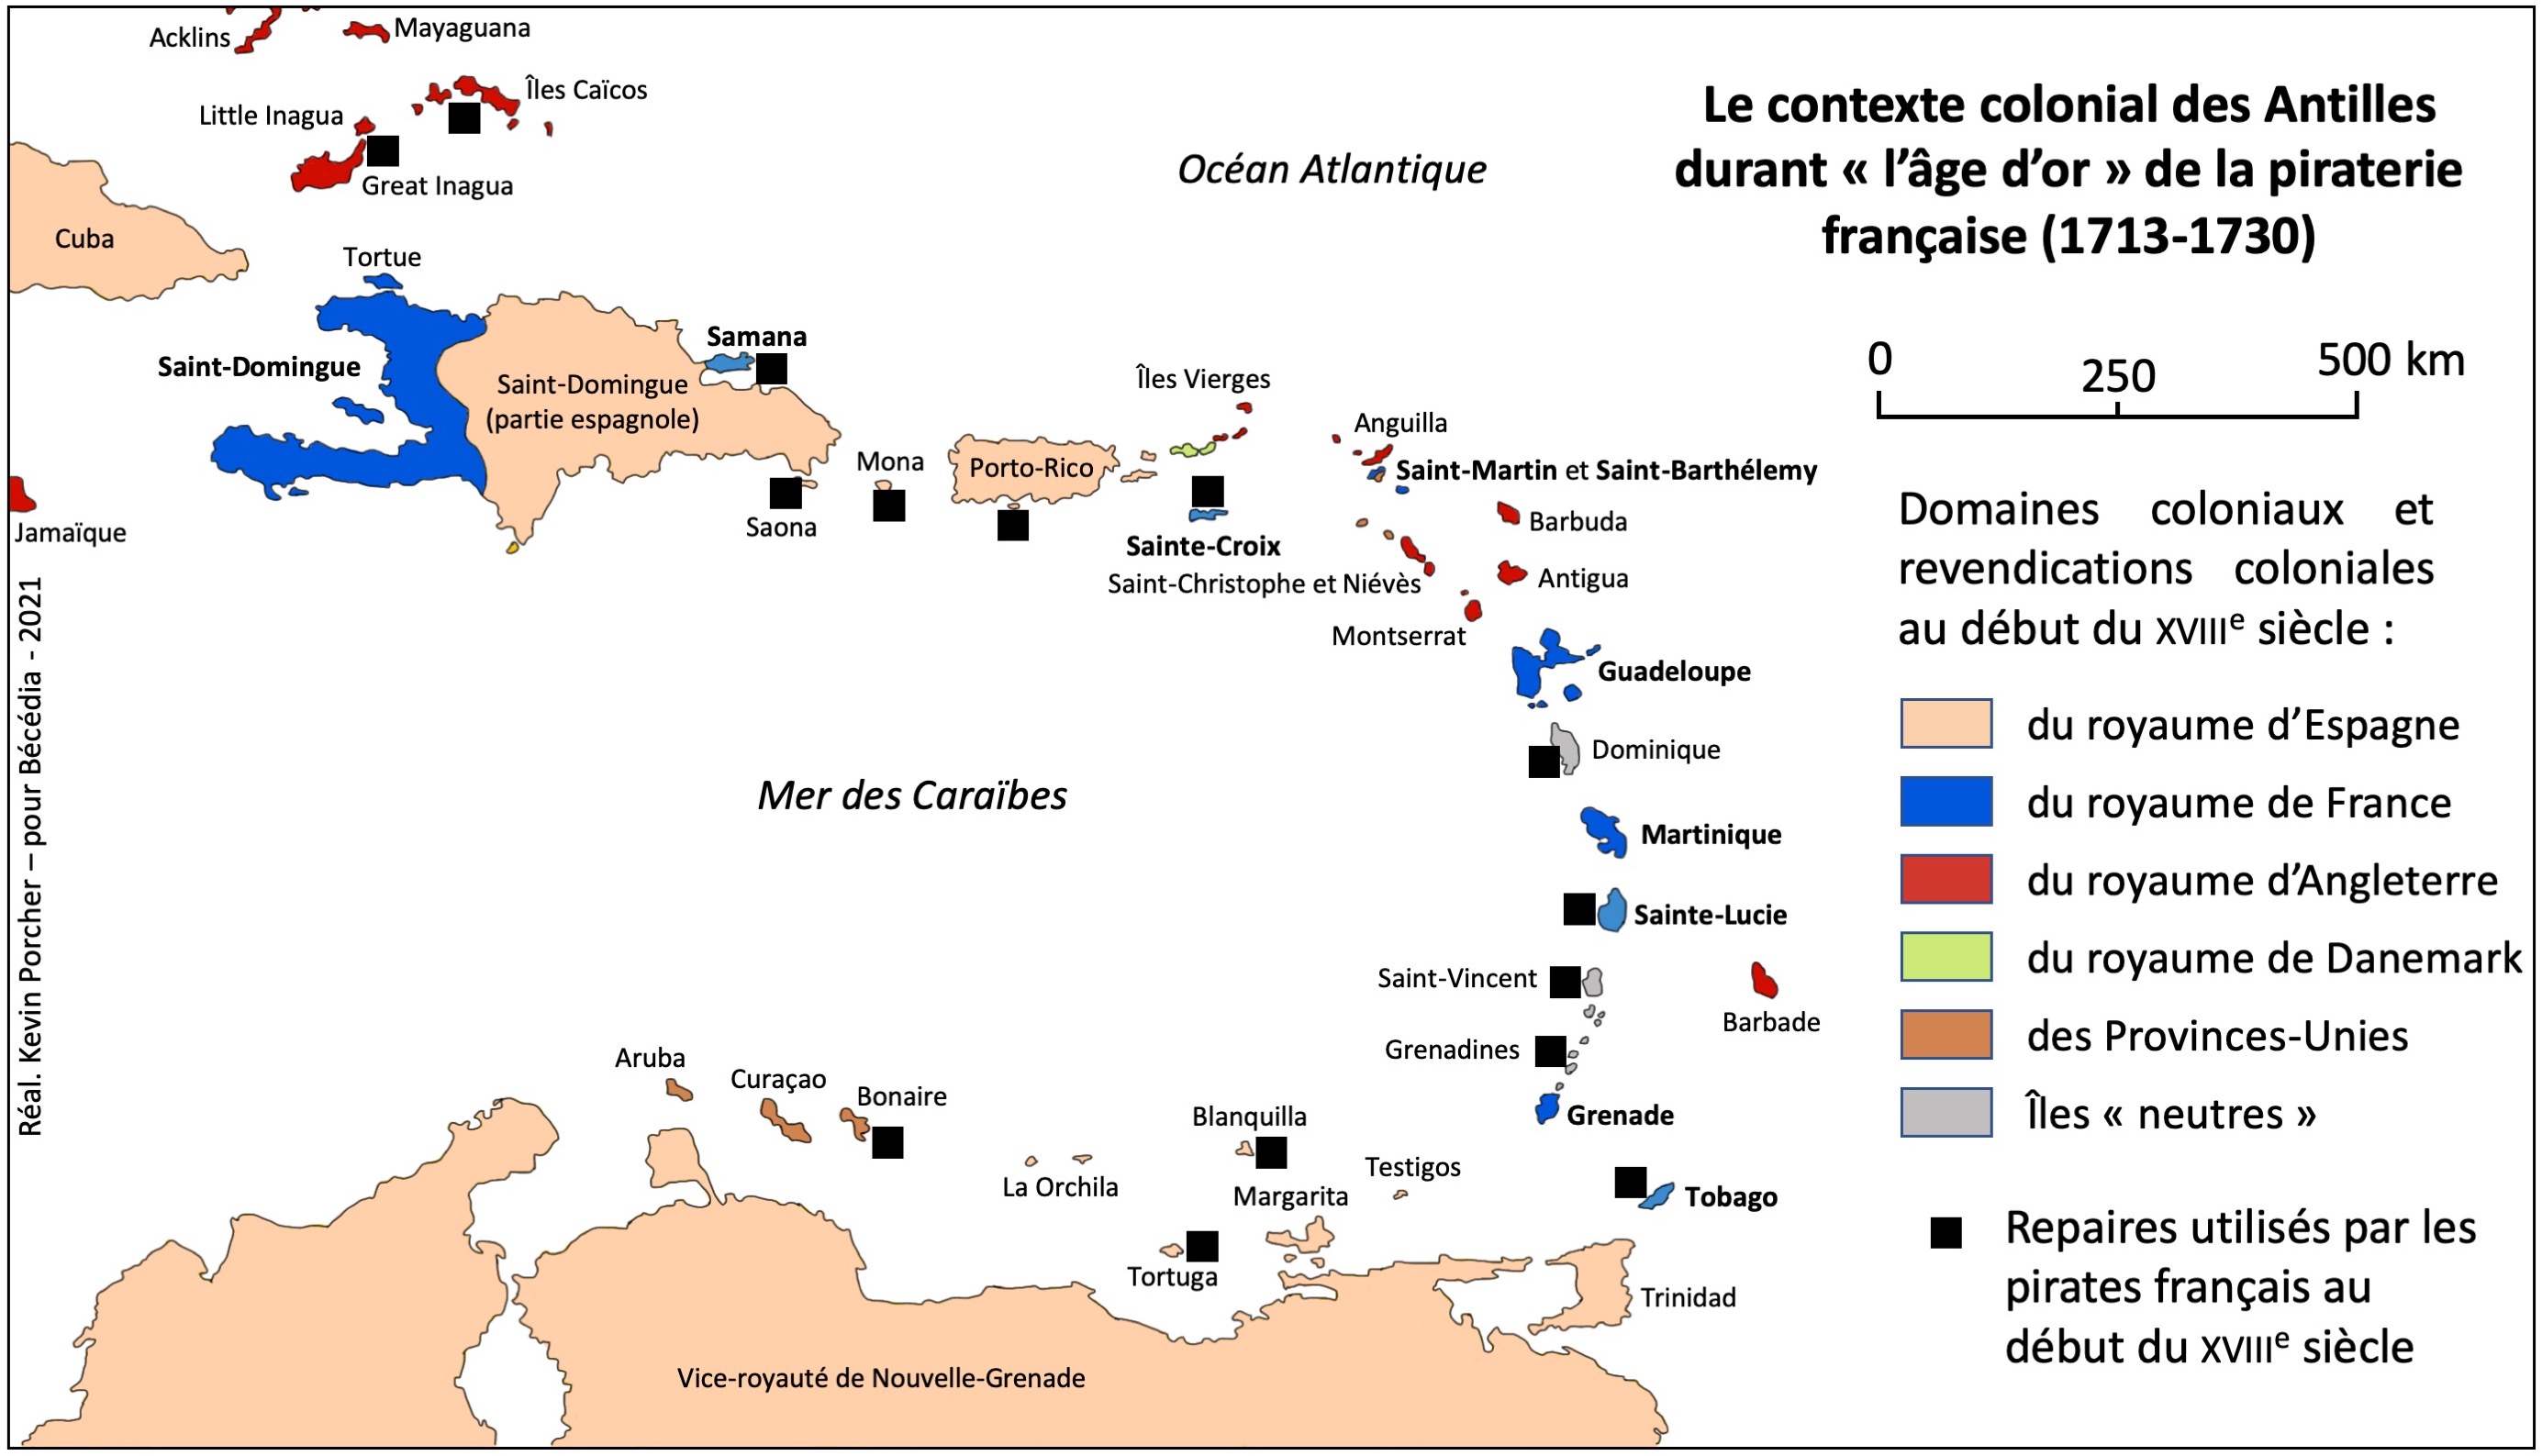 Le contexte colonial des Antilles durant "l'âge d'or" de la piraterie française (1713-1730). Carte: Kévin Porcher.